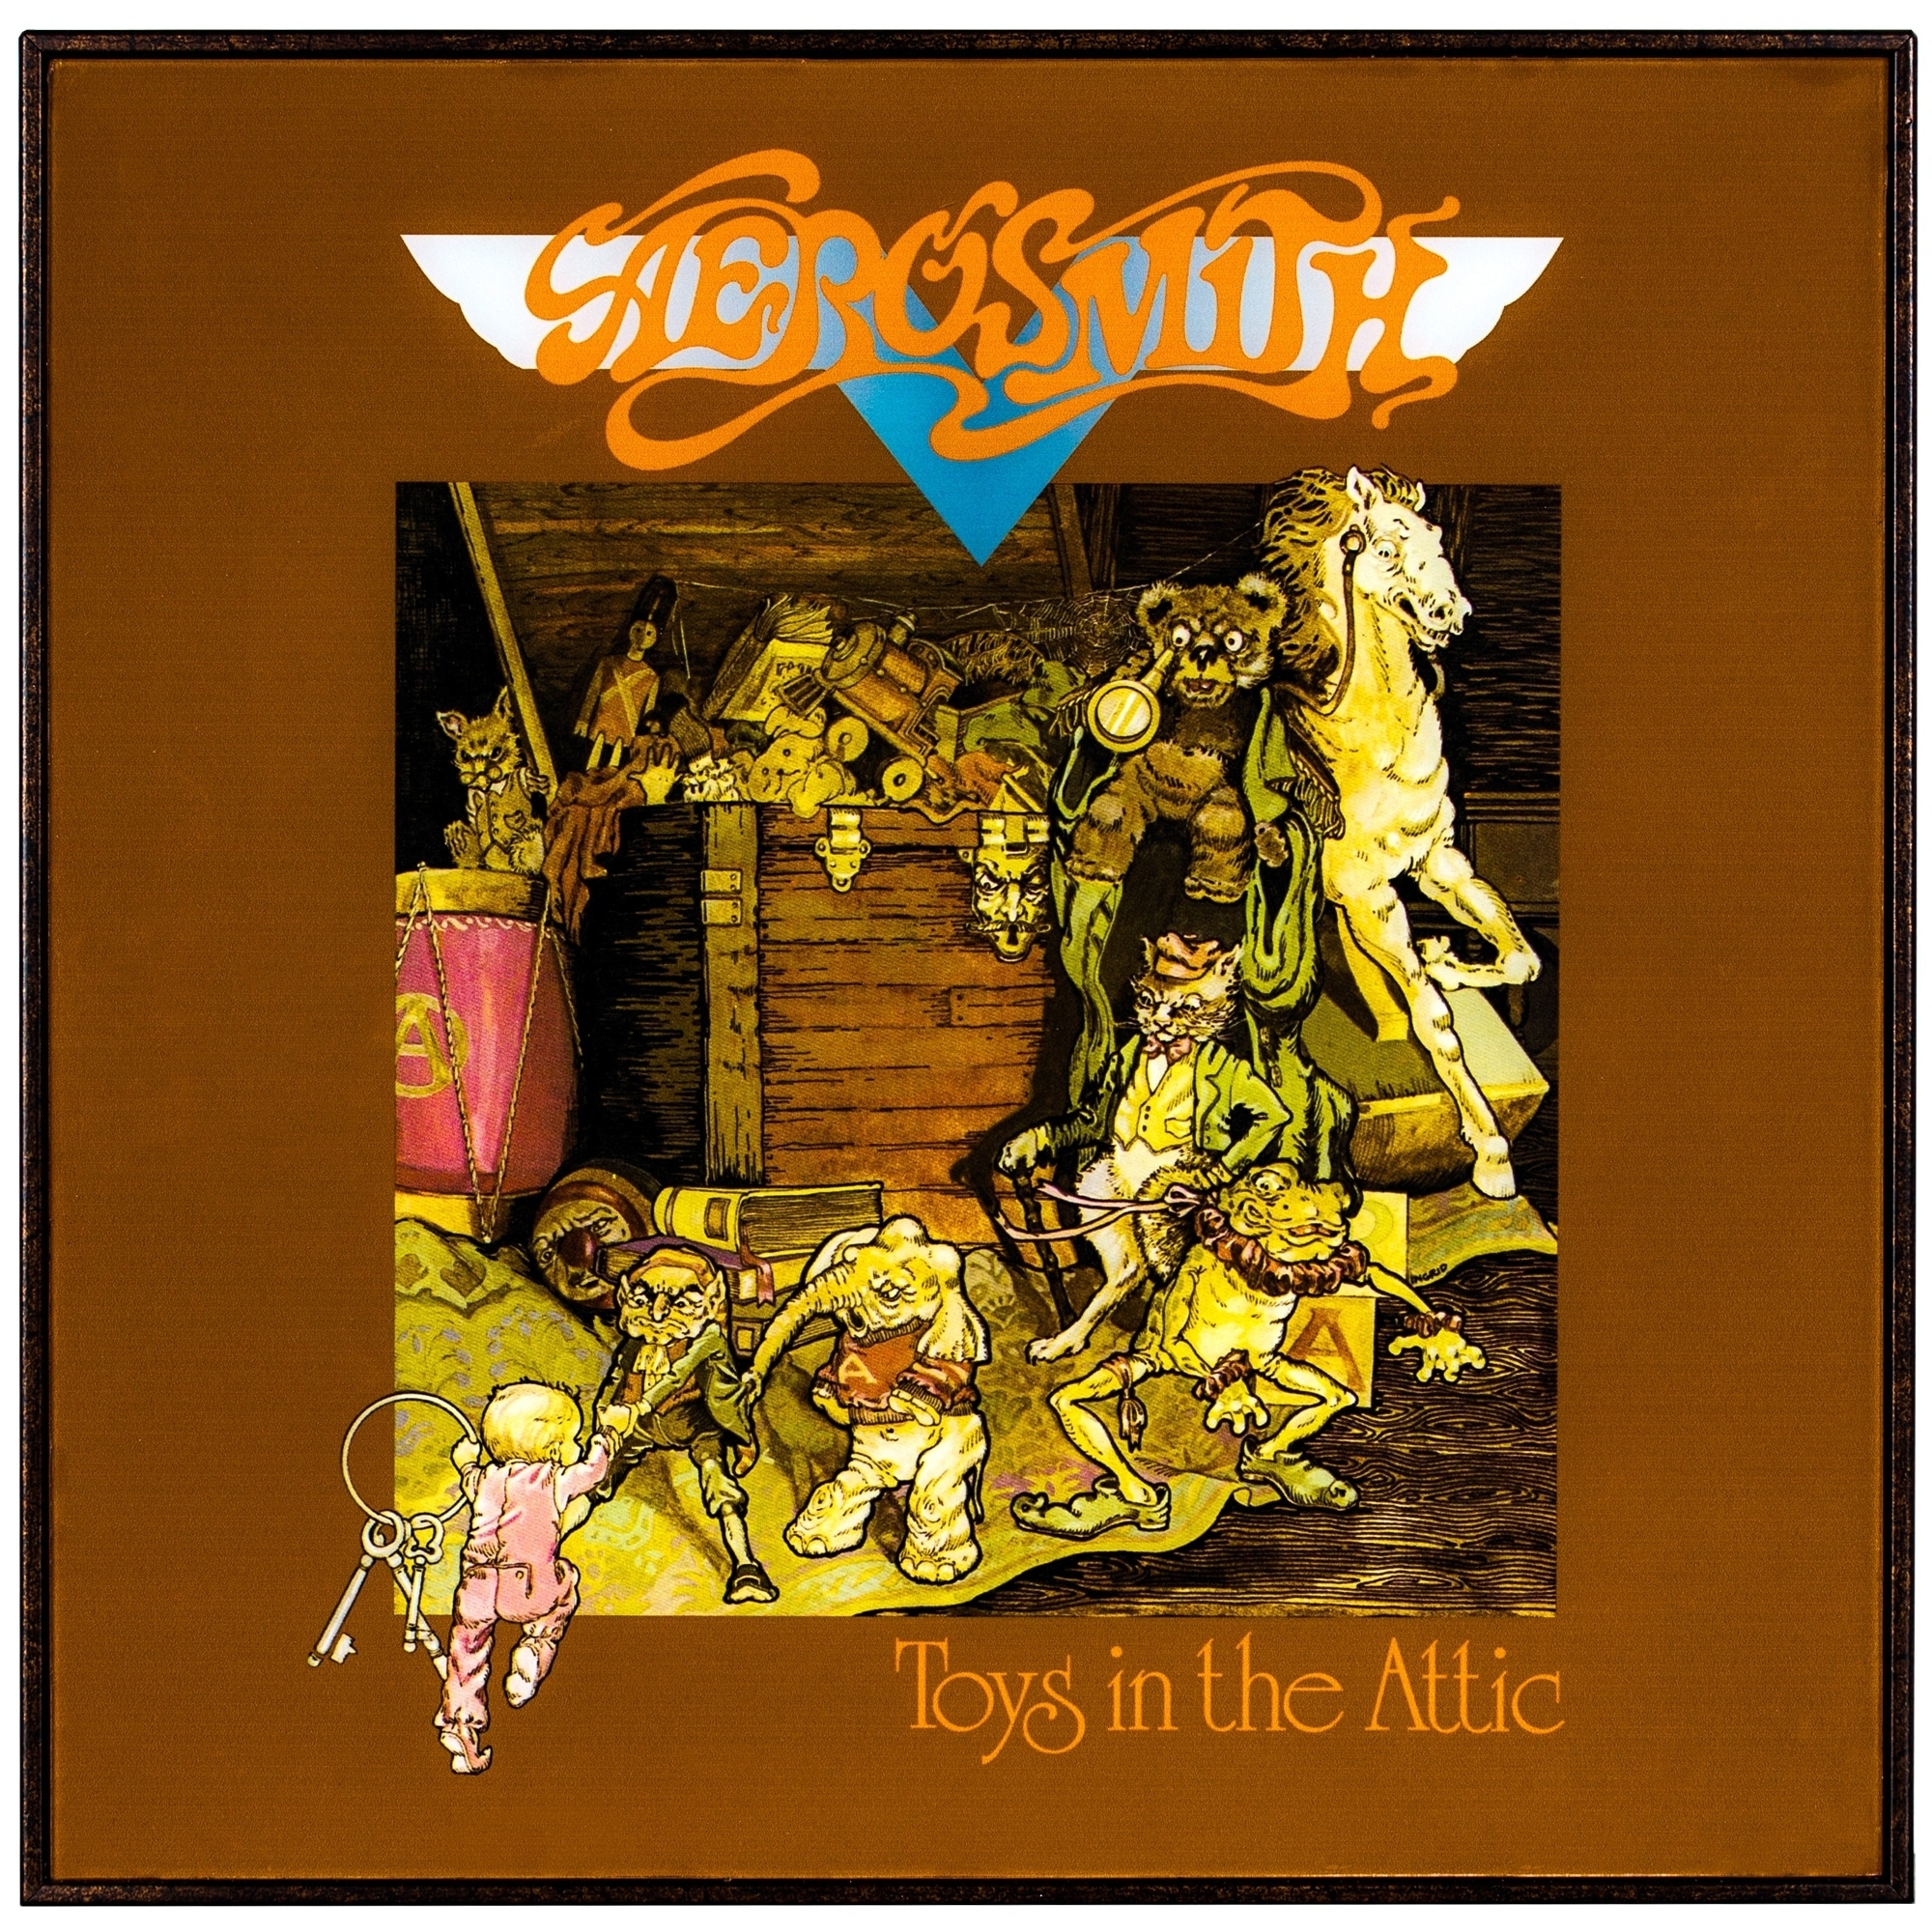 ¿Qué Estás Escuchando? - Página 19 Aerosmith-Toys-in-the-Attic-Framed-Album-Cover-123b3019-3ebe-42da-bf9a-8bd7ccf4bc51